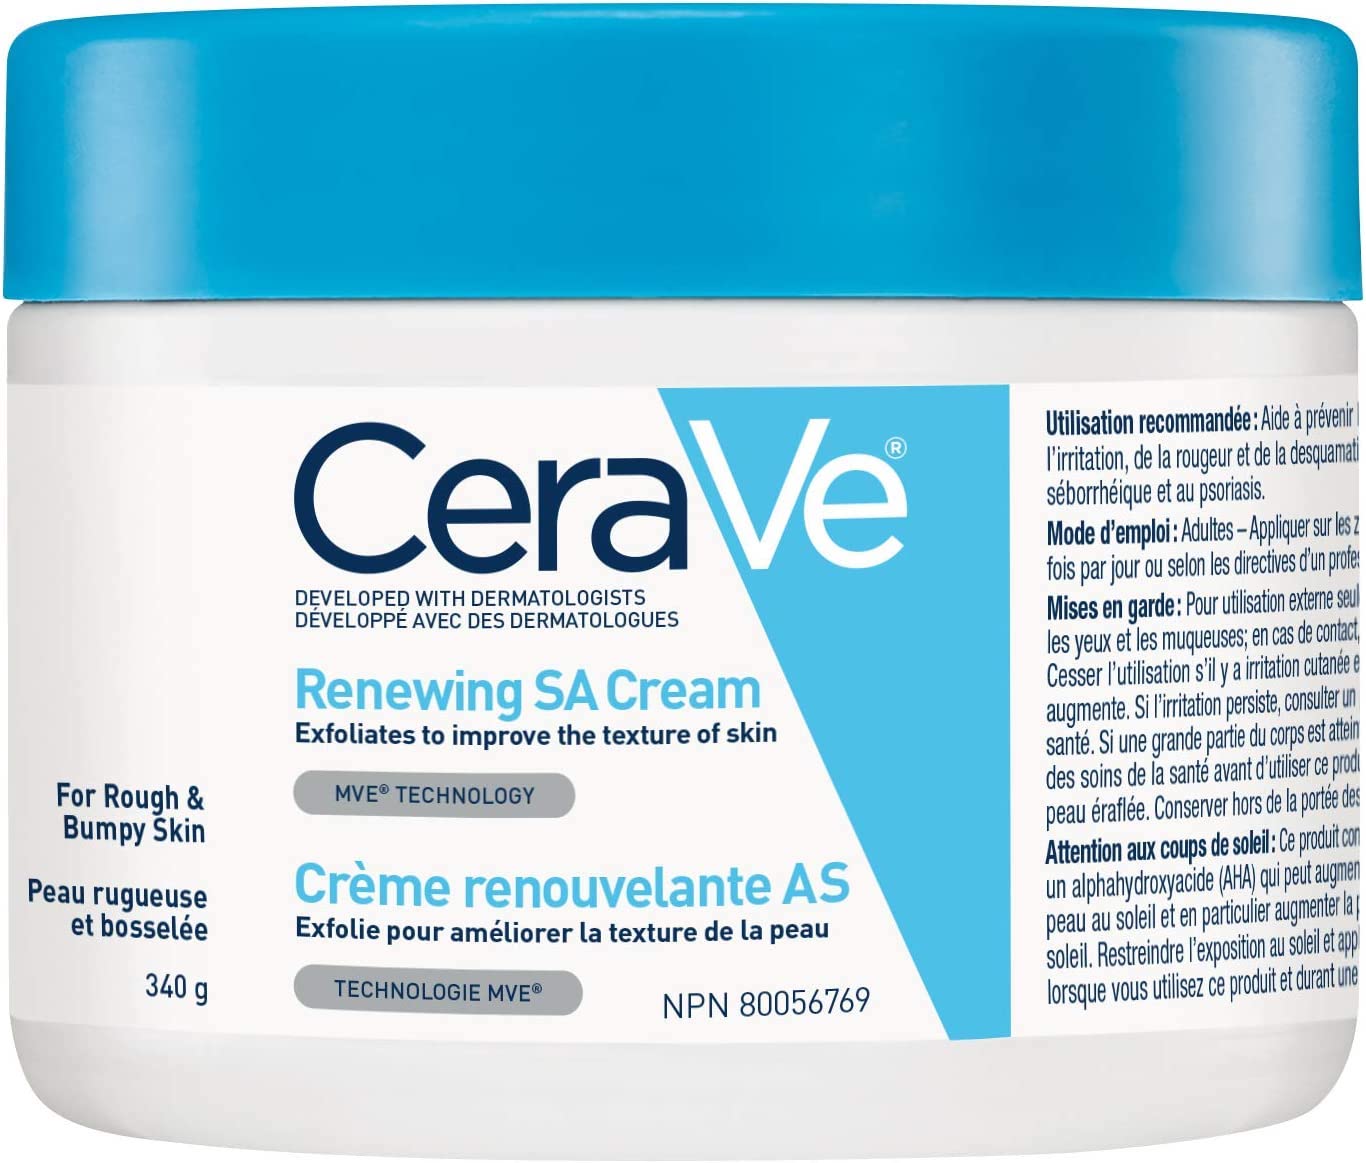 CeraVe renewing cream.